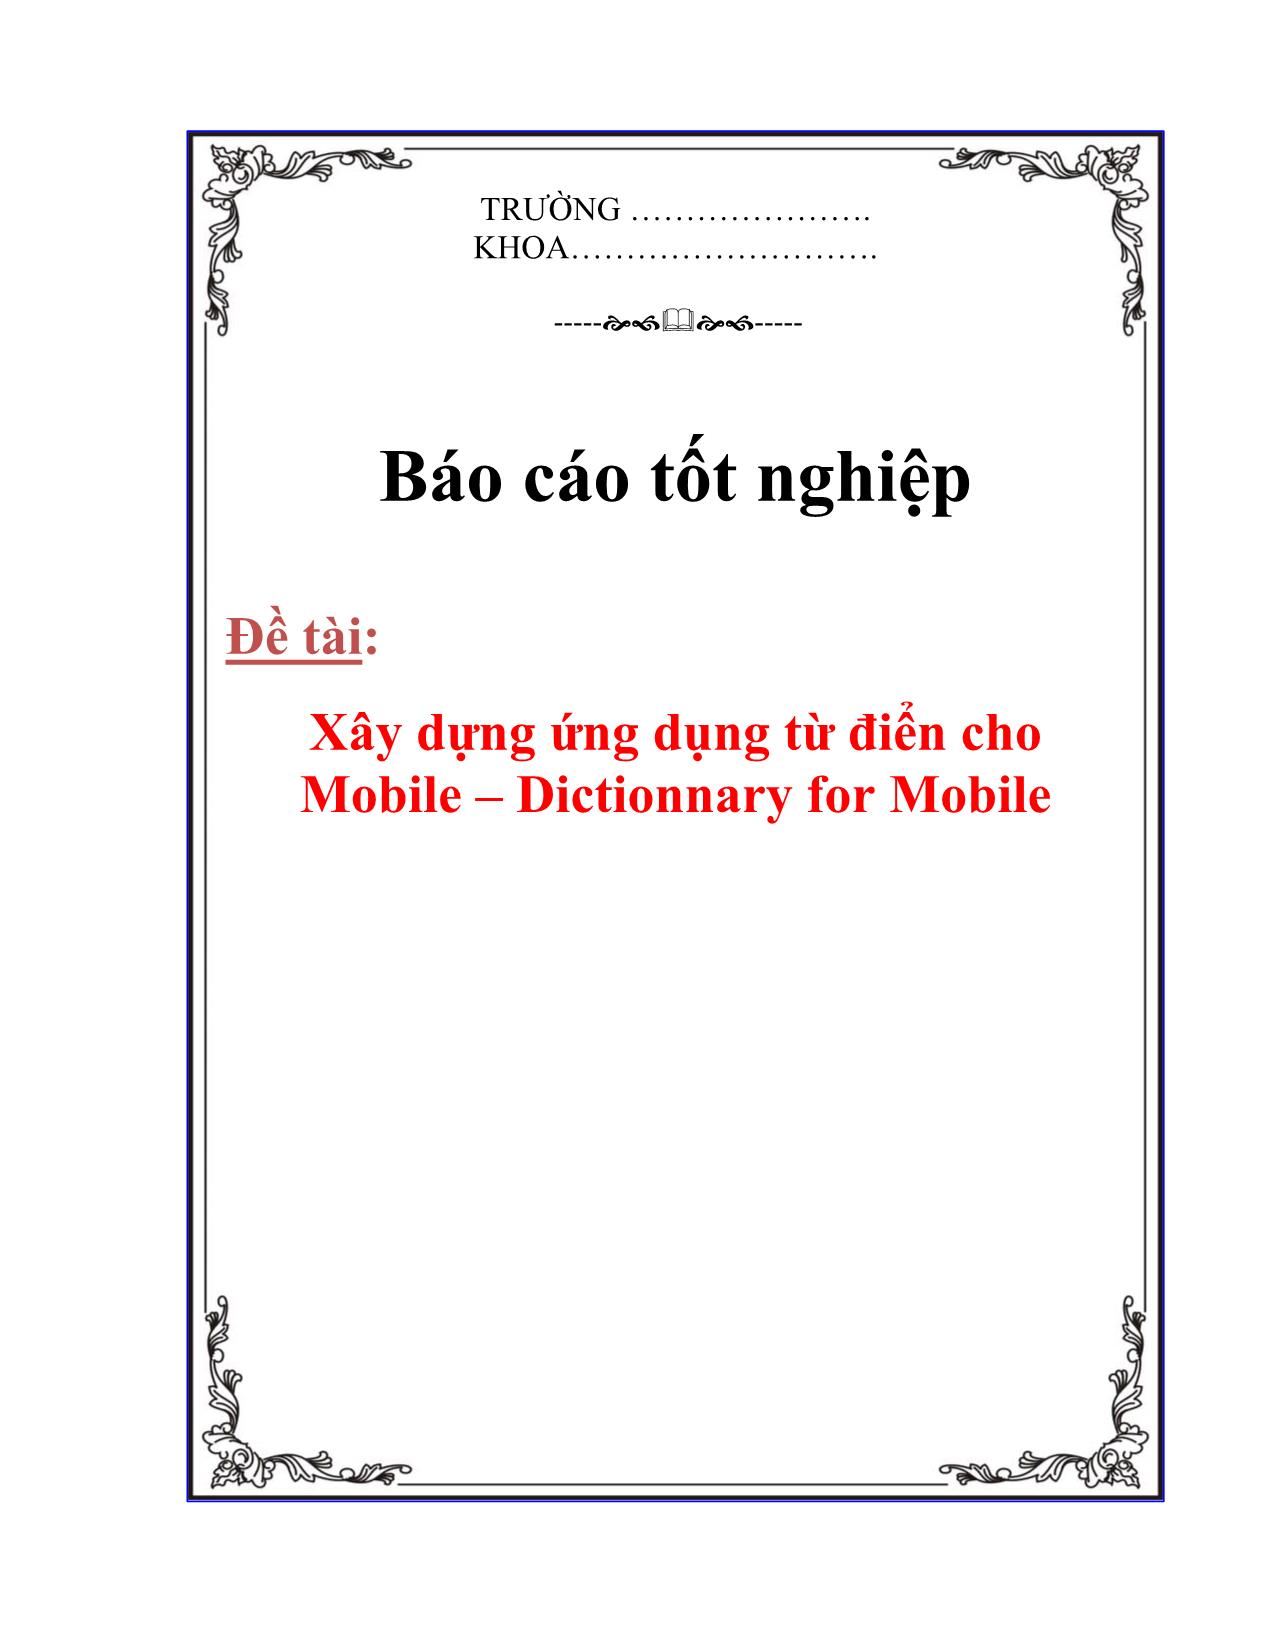 Khóa luận Xây dựng ứng dụng từ điển cho Mobile – Dictionnary for Mobile trang 1